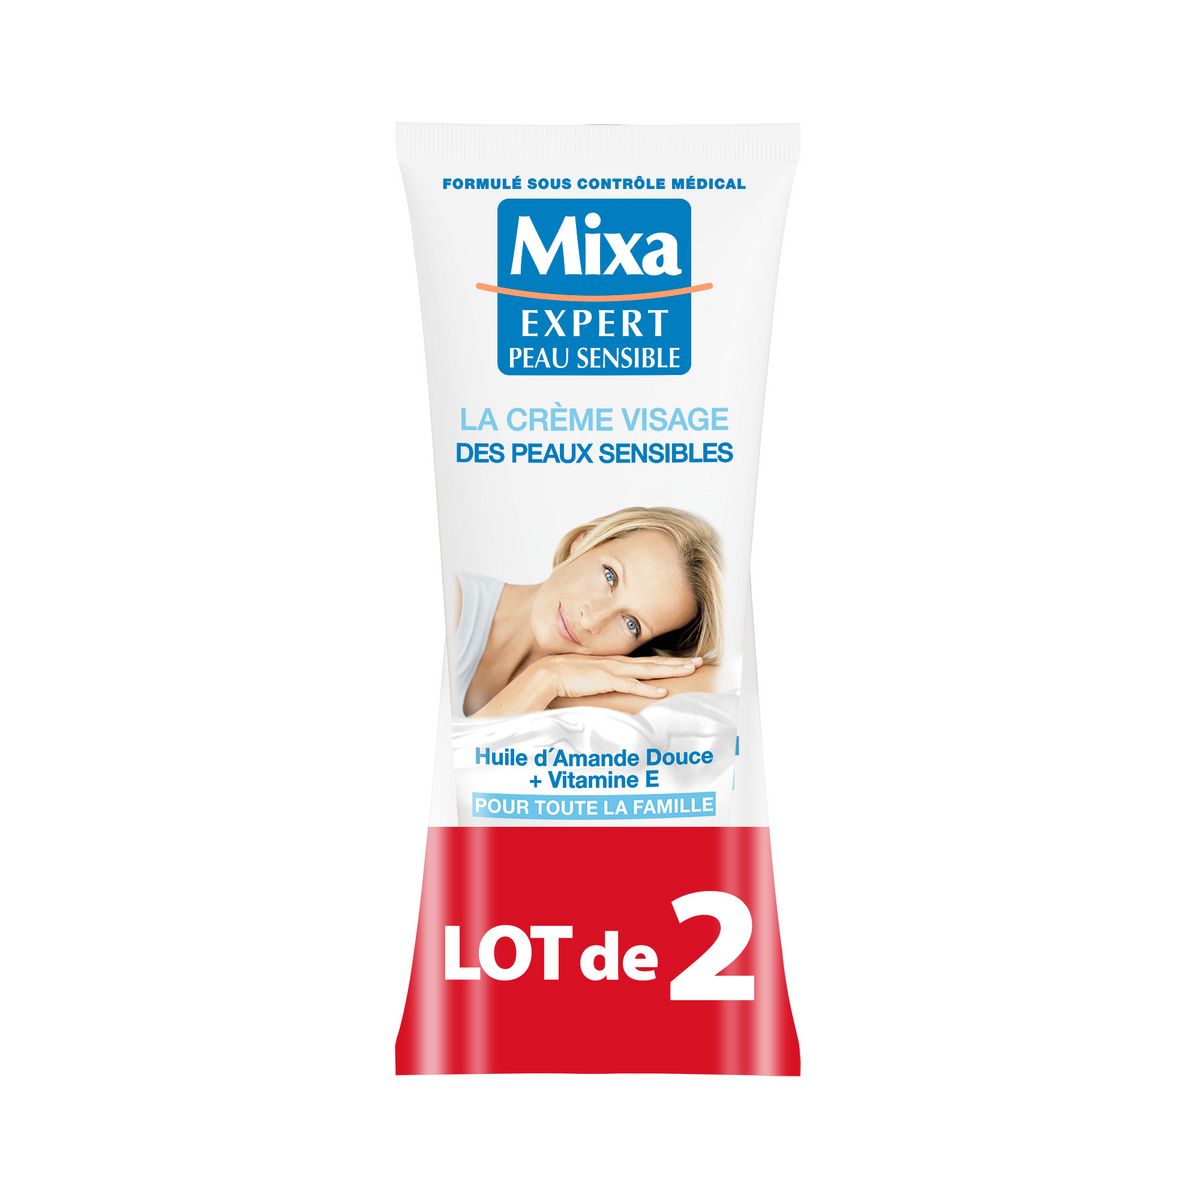 MIXA Expert Crème visage pour les peaux sensibles 2x100ml